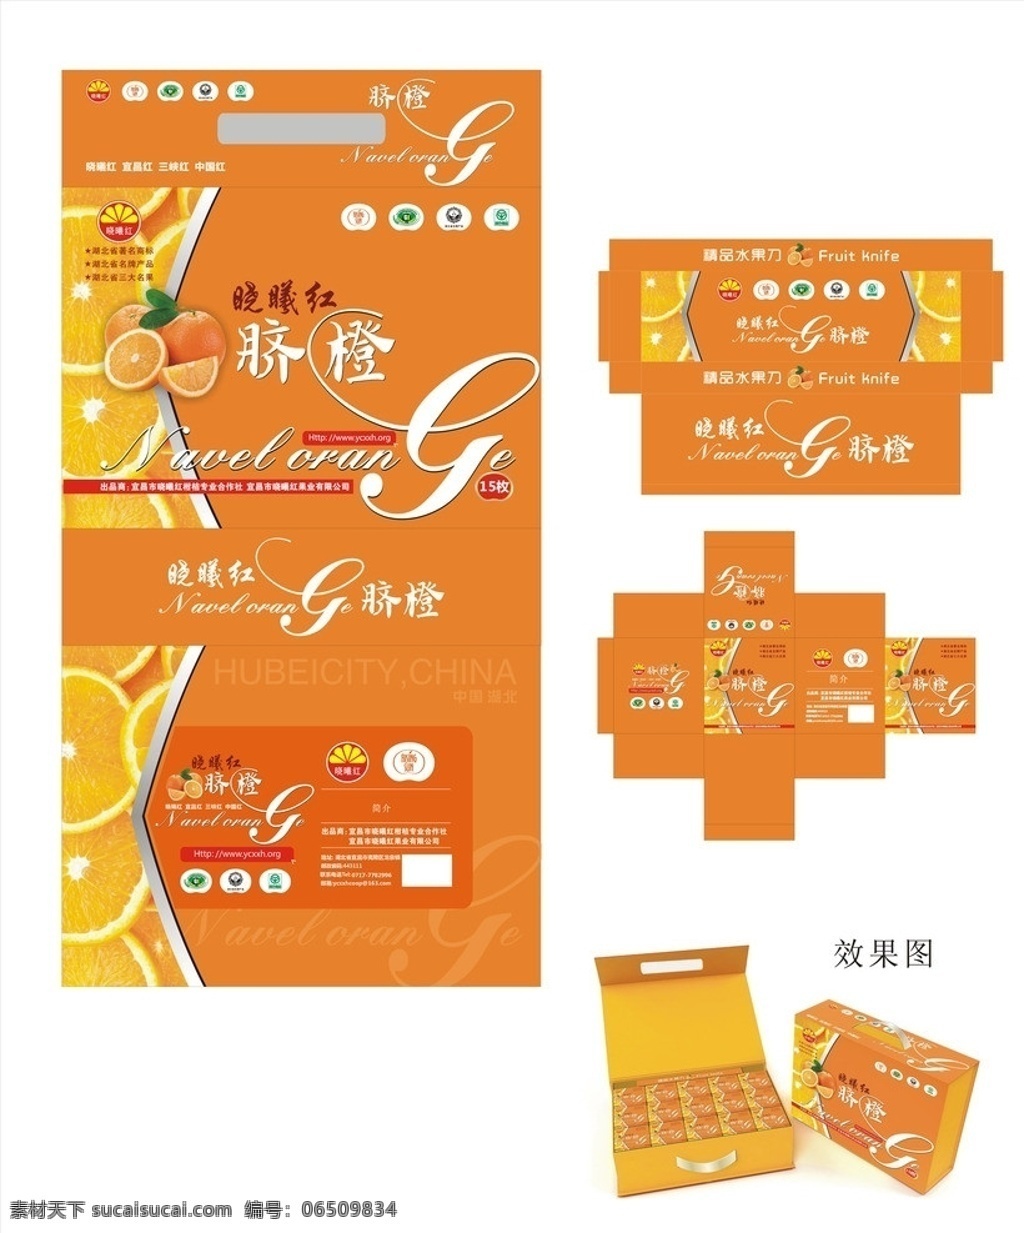 脐橙包装 脐橙 刘友泽 晓曦红 晓曦红包装 包装设计 矢量